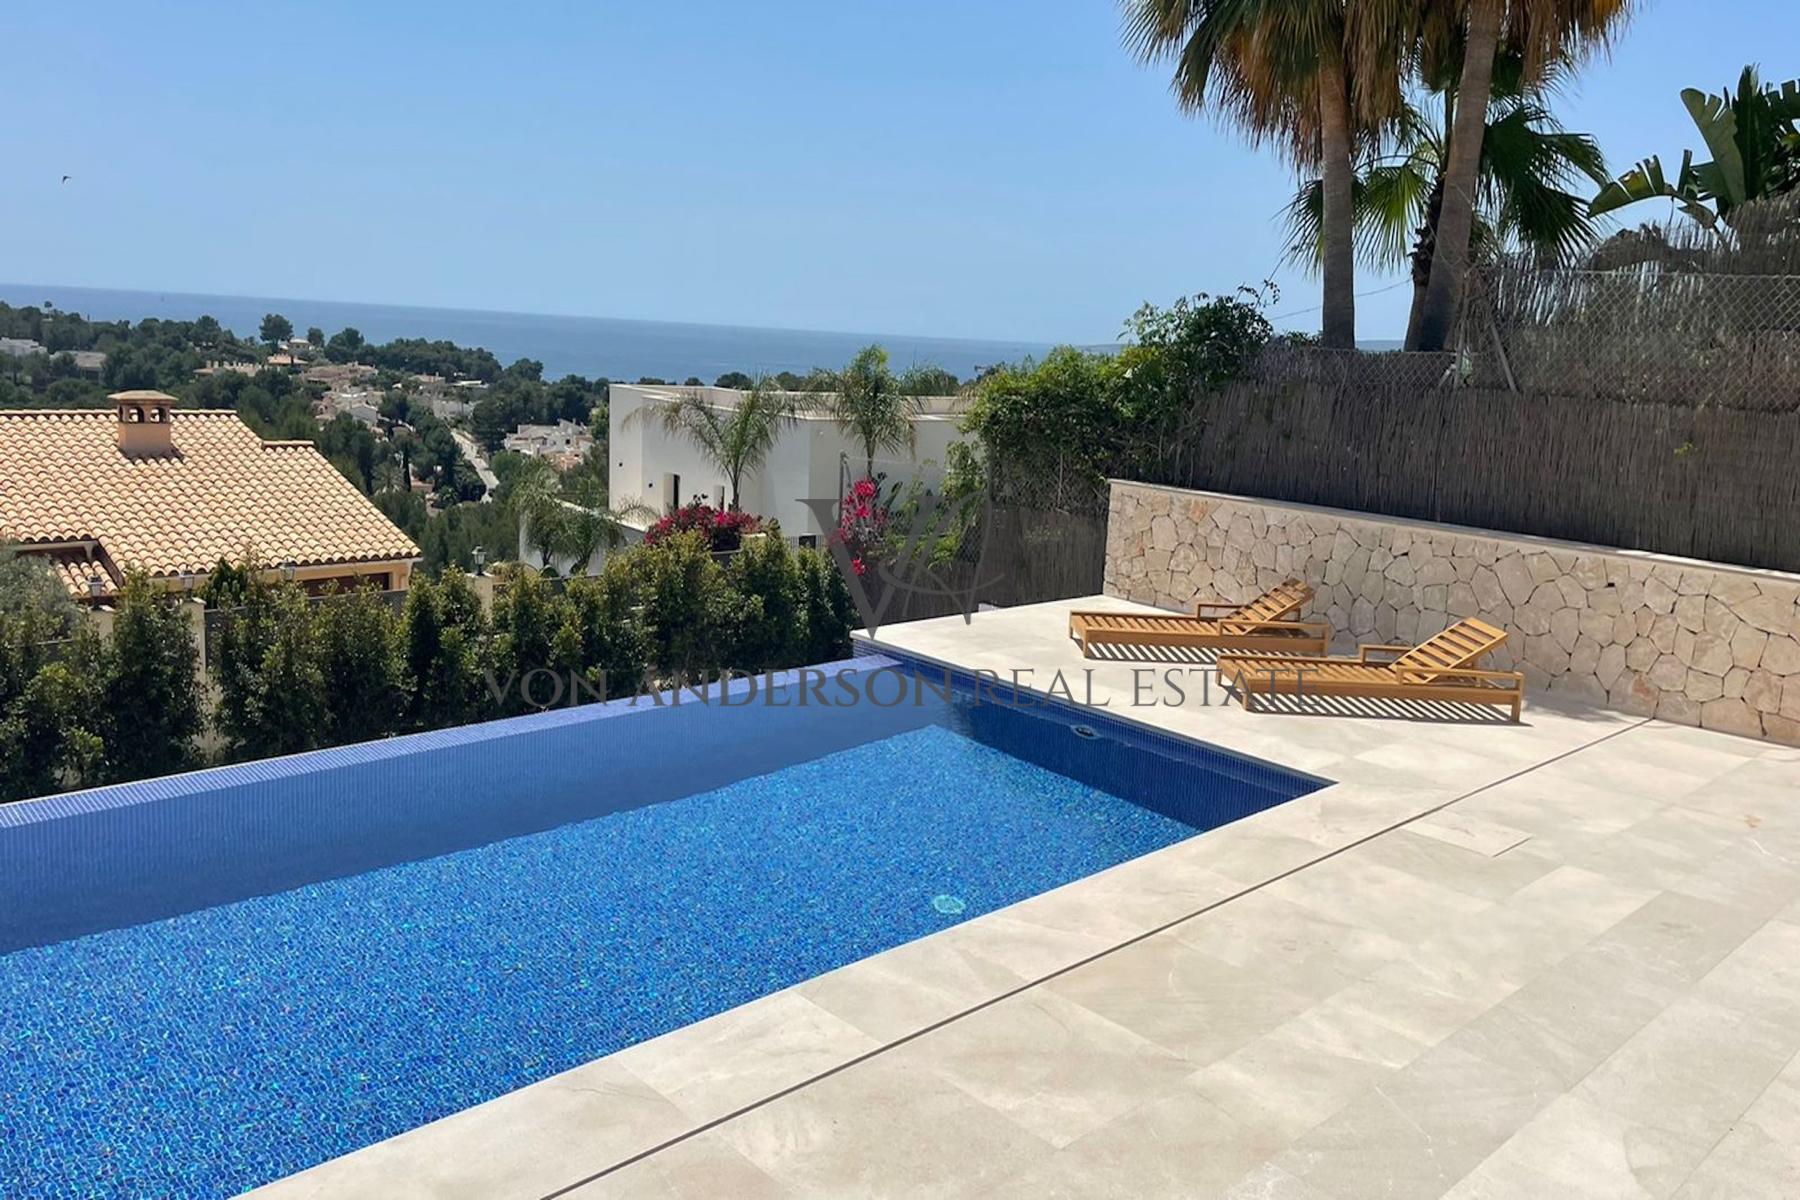 Breathtaking Villa Residence in the Prestigious Bendinat Community, ref. VA1018, for sale in Mallorca by Von Anderson Real Estate